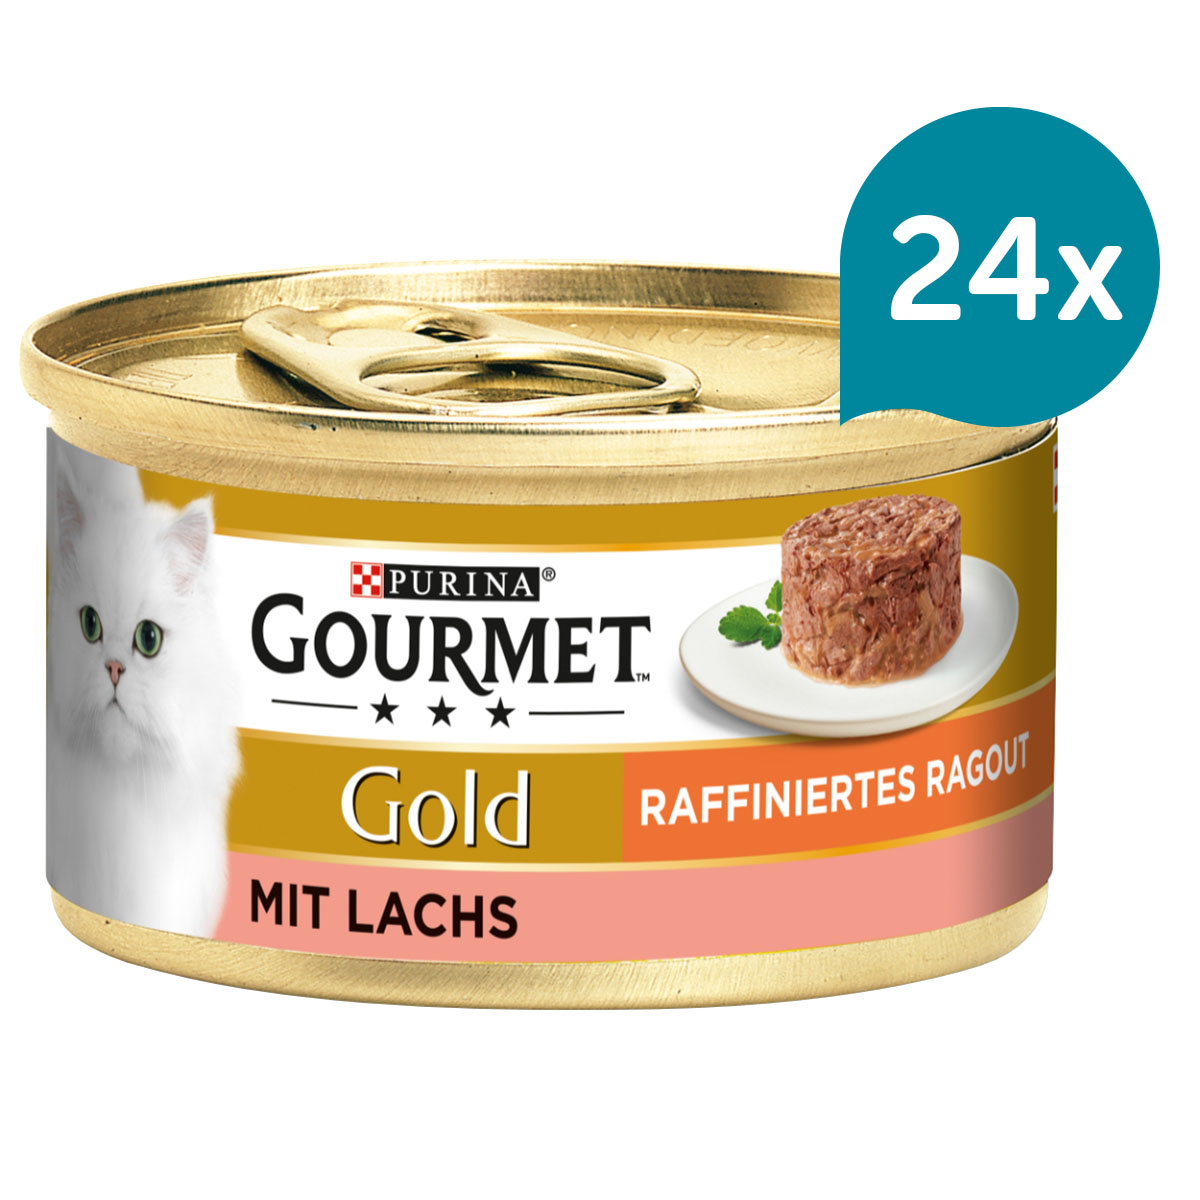 Gourmet Gold Raffiniertes Ragout – losos